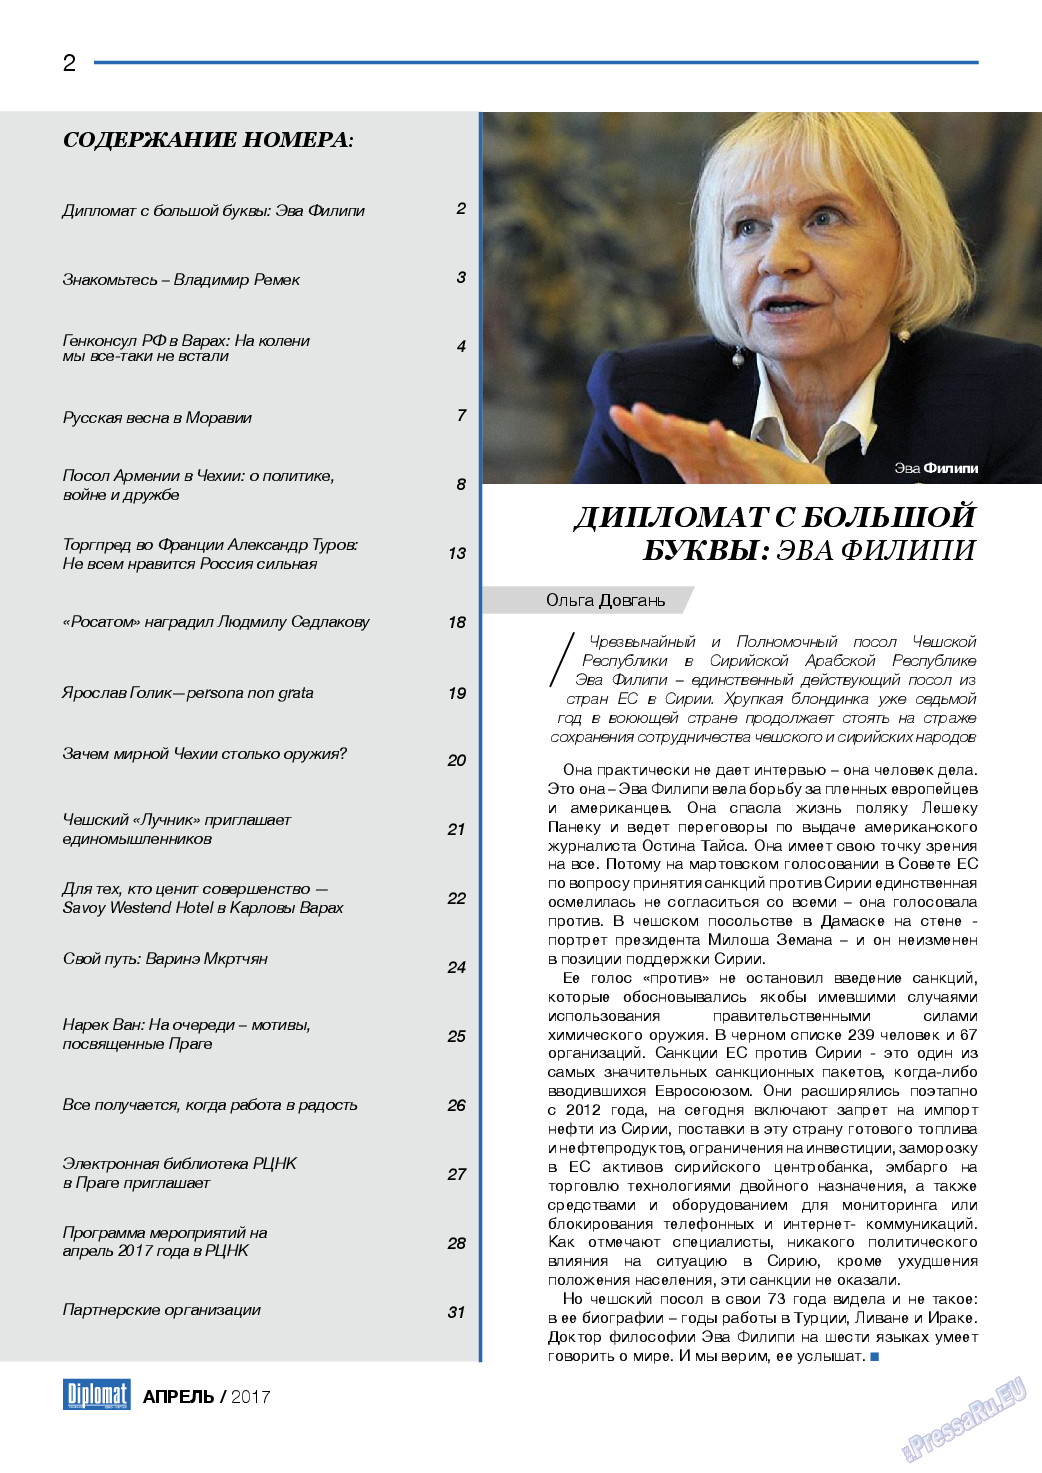 Diplomat, газета. 2017 №91 стр.2